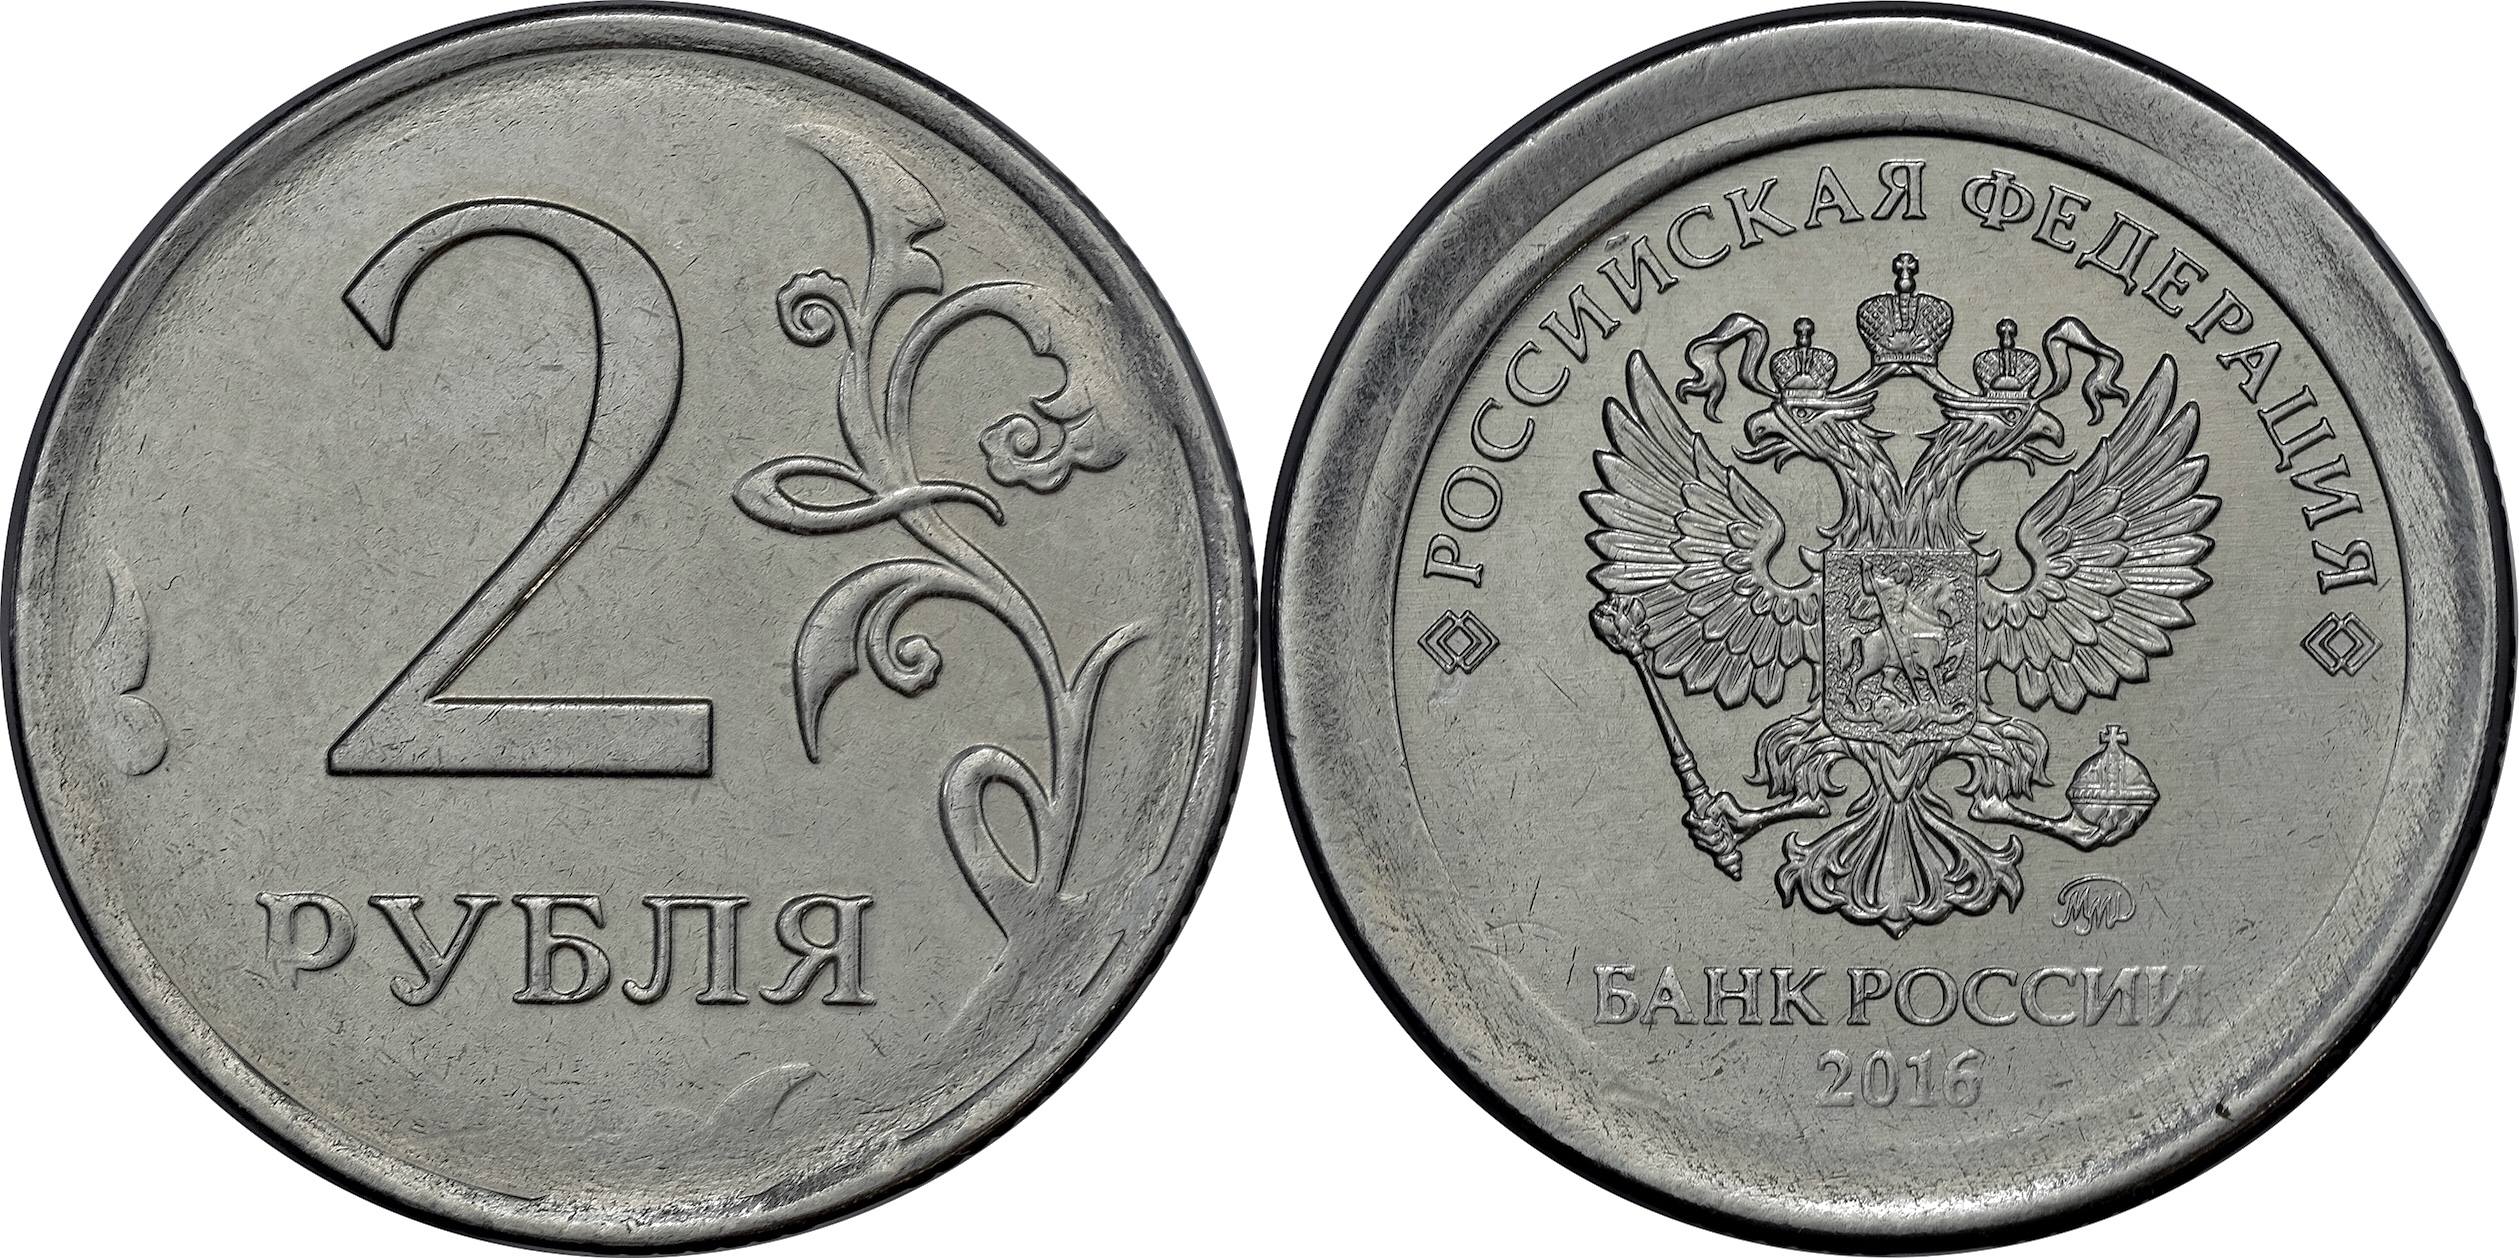 На рубле без руб. 2 Рубля. Монеты 1 и 2 рубля. Монеты 1 рубль 2 рубля.